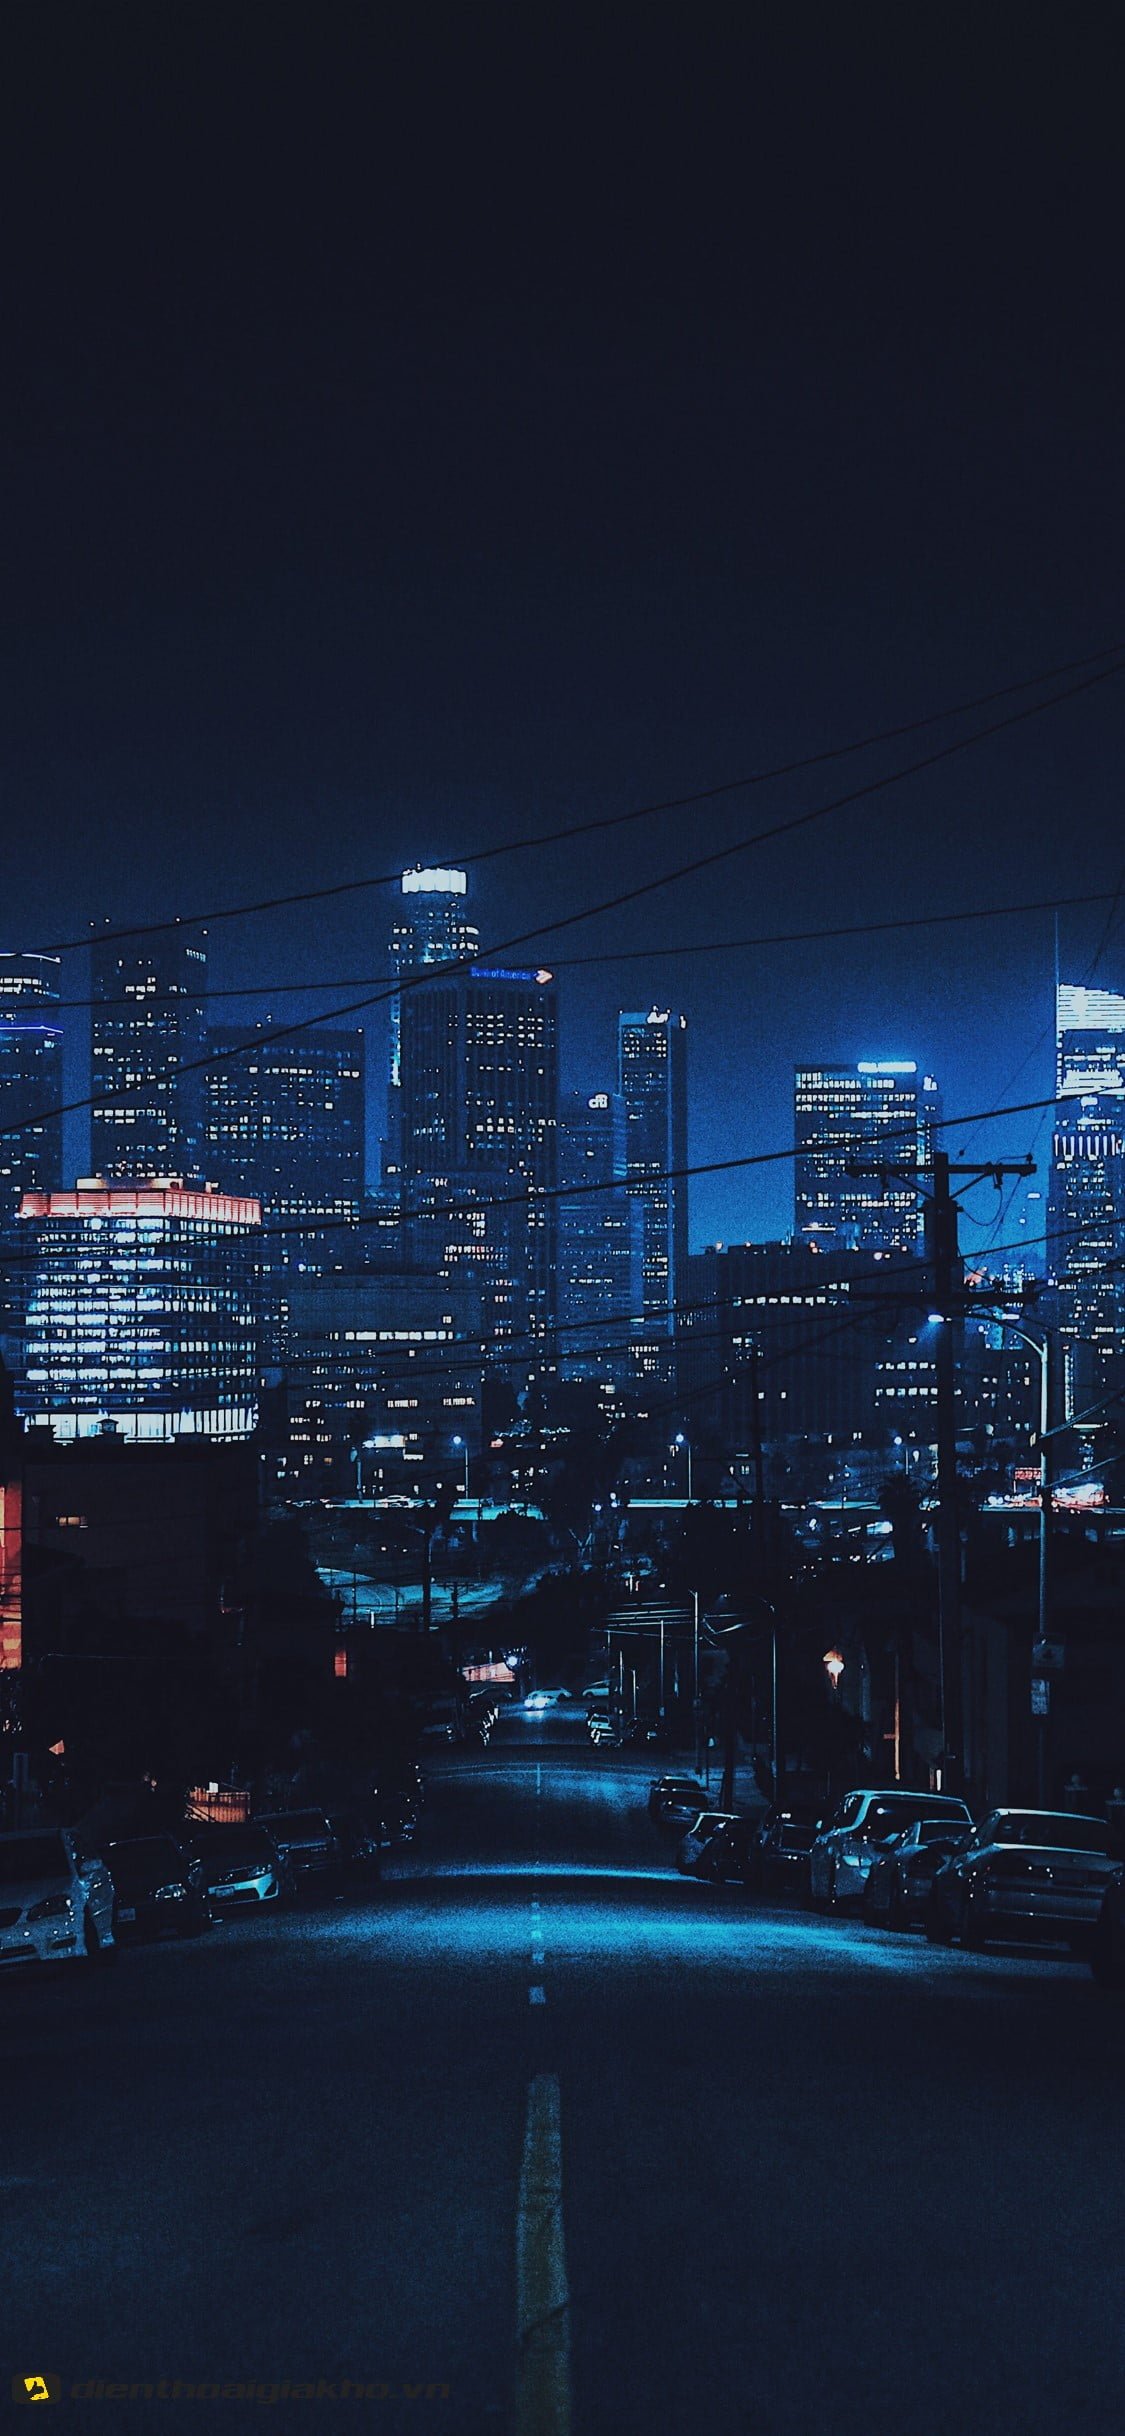 Hình nền iphone 10 với khung cảnh thành phố sáng đèn vào buổi đêm, đẹp lung linh huyền ảo, giúp nổi bật các icon, app điện thoại của bạn